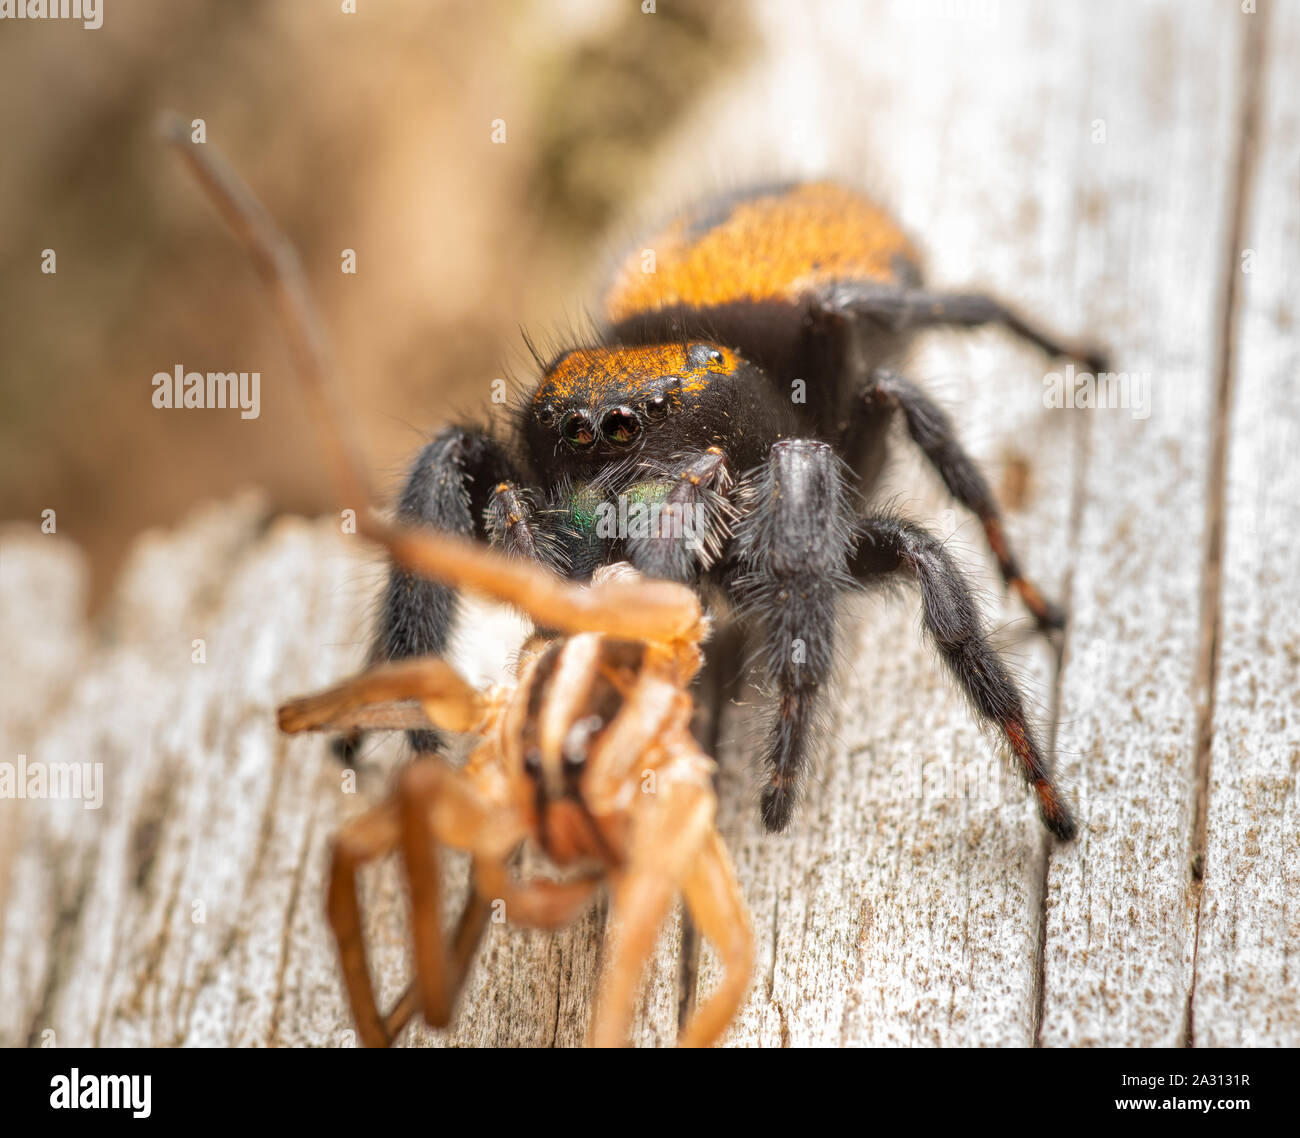 Apache femmina jumping spider, Phidippus apacheanus, mangiare una grande wolf spider sul lato di una staccionata in legno post Foto Stock